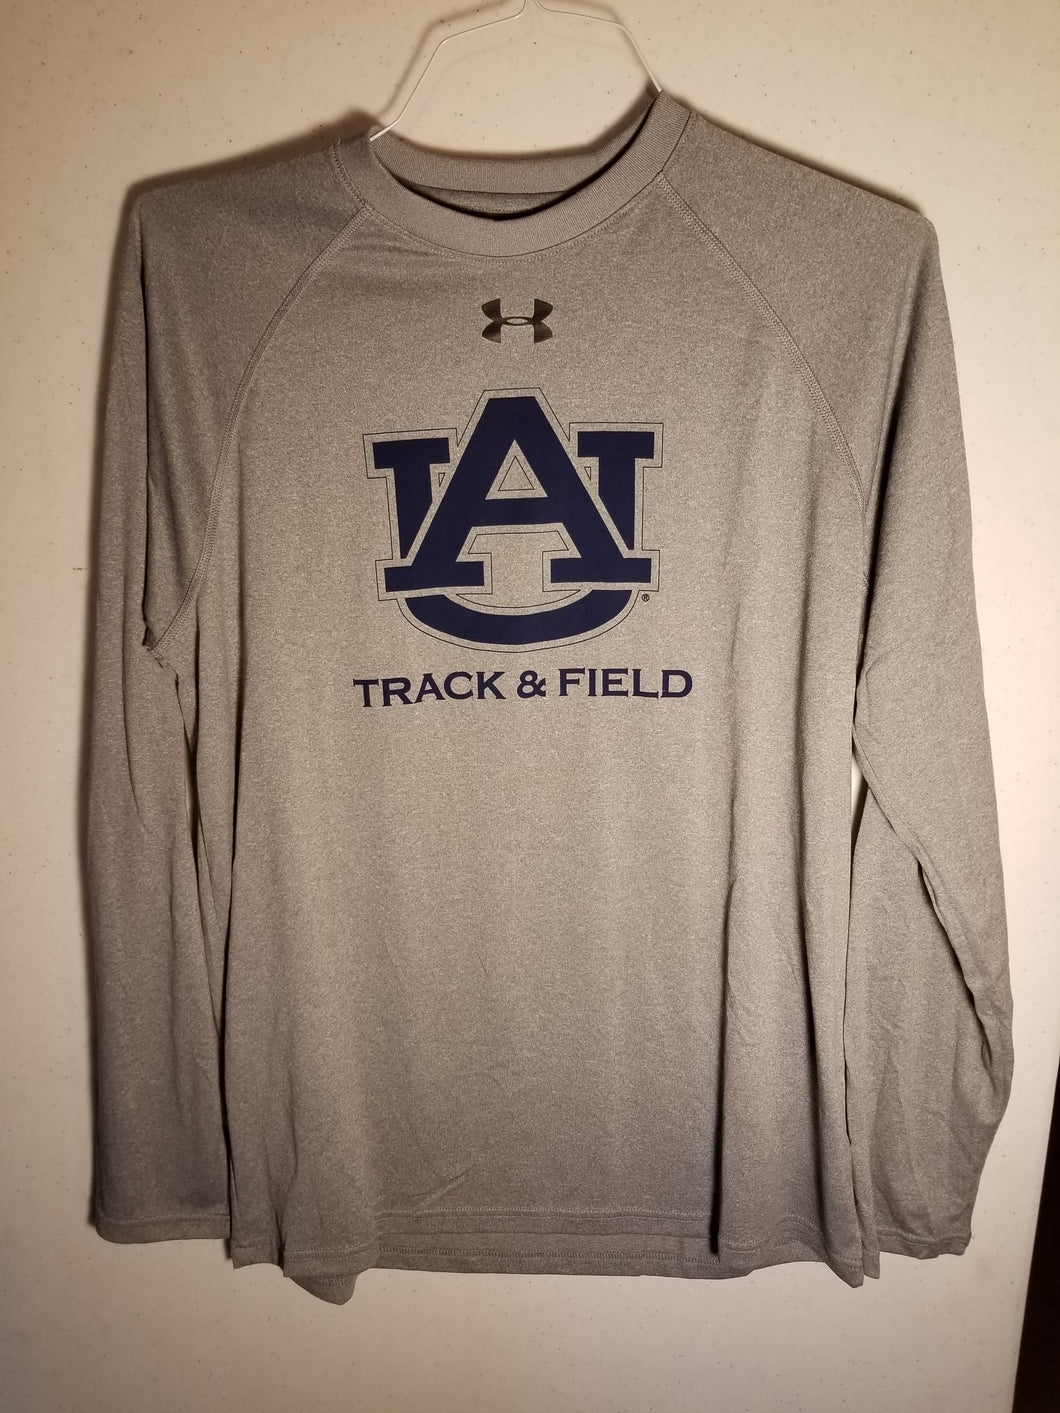 Women's Auburn Grey Track & Field Long Sleeve Performance Wear